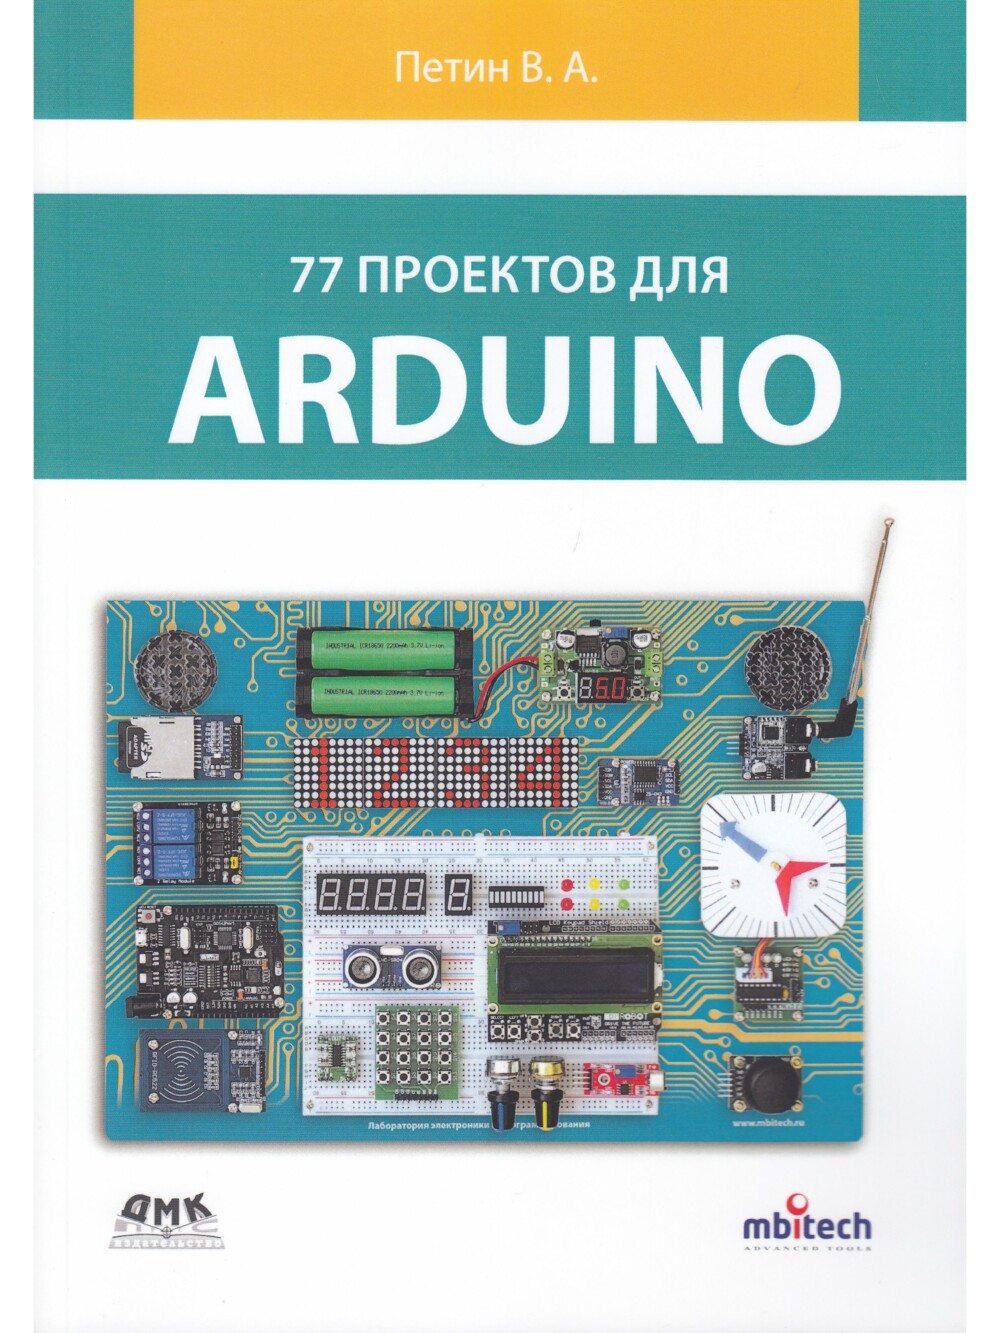 Петин В.А. 77 проектов для Arduino [2020]